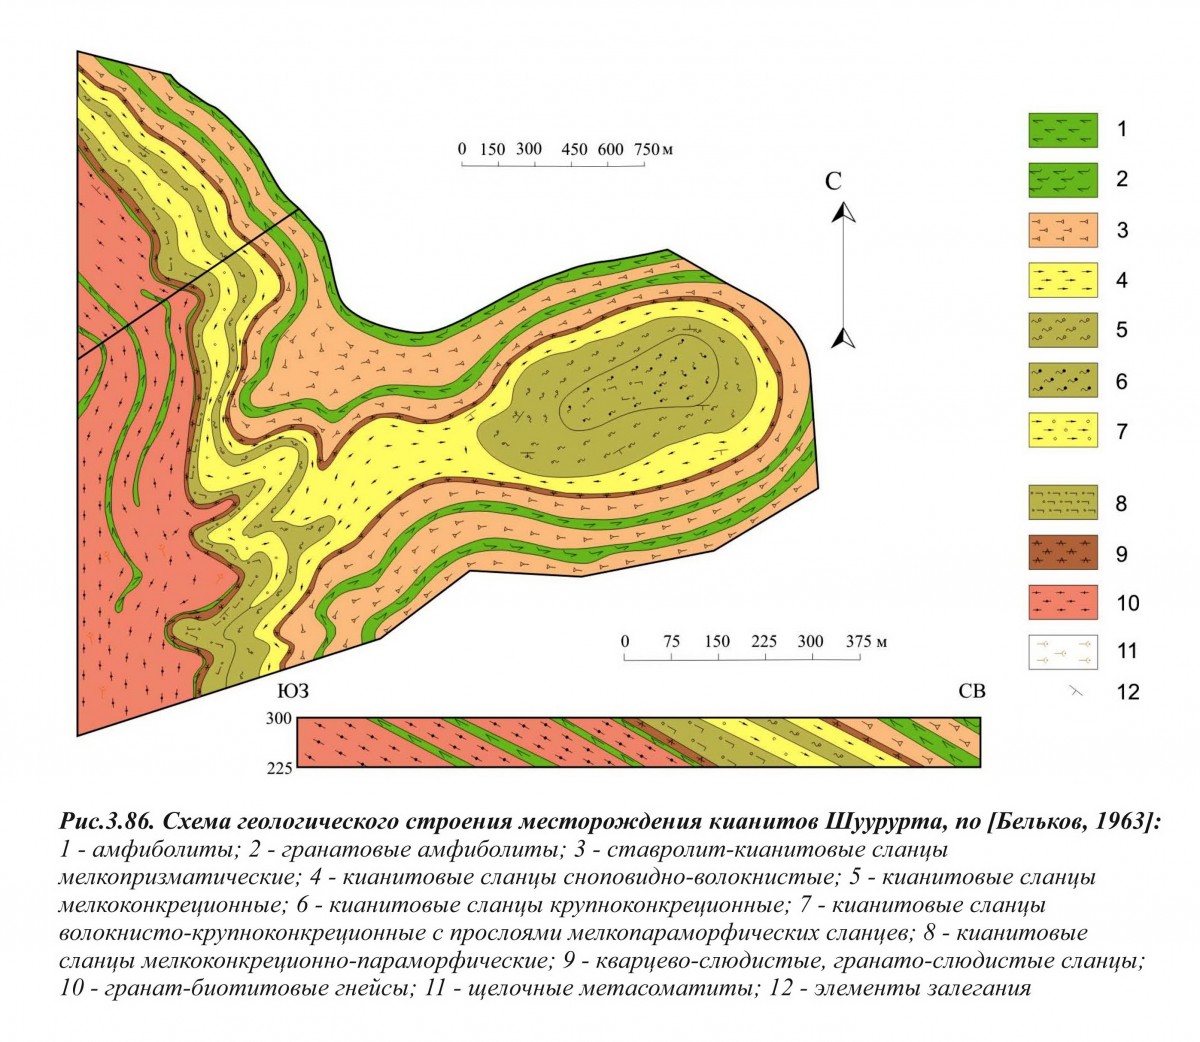 Схема месторождения Шуурурта. Фотография месторождения. Шуурурта гора, Мурманская область (Кольский регион), Россия.